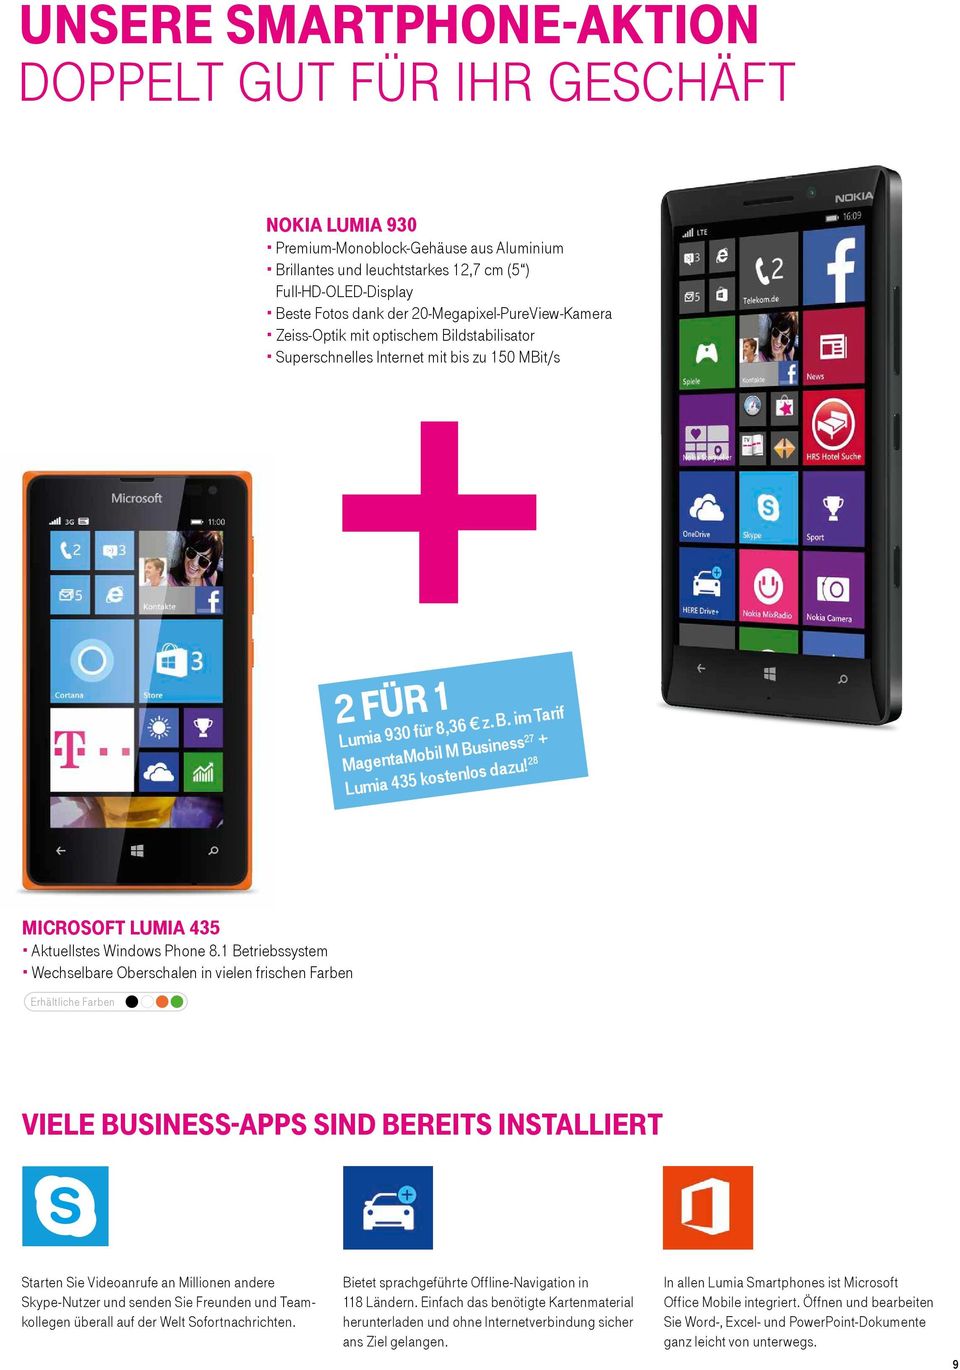 28 MICROSOfT lumia 435 Aktuellstes Windows Phone 8.